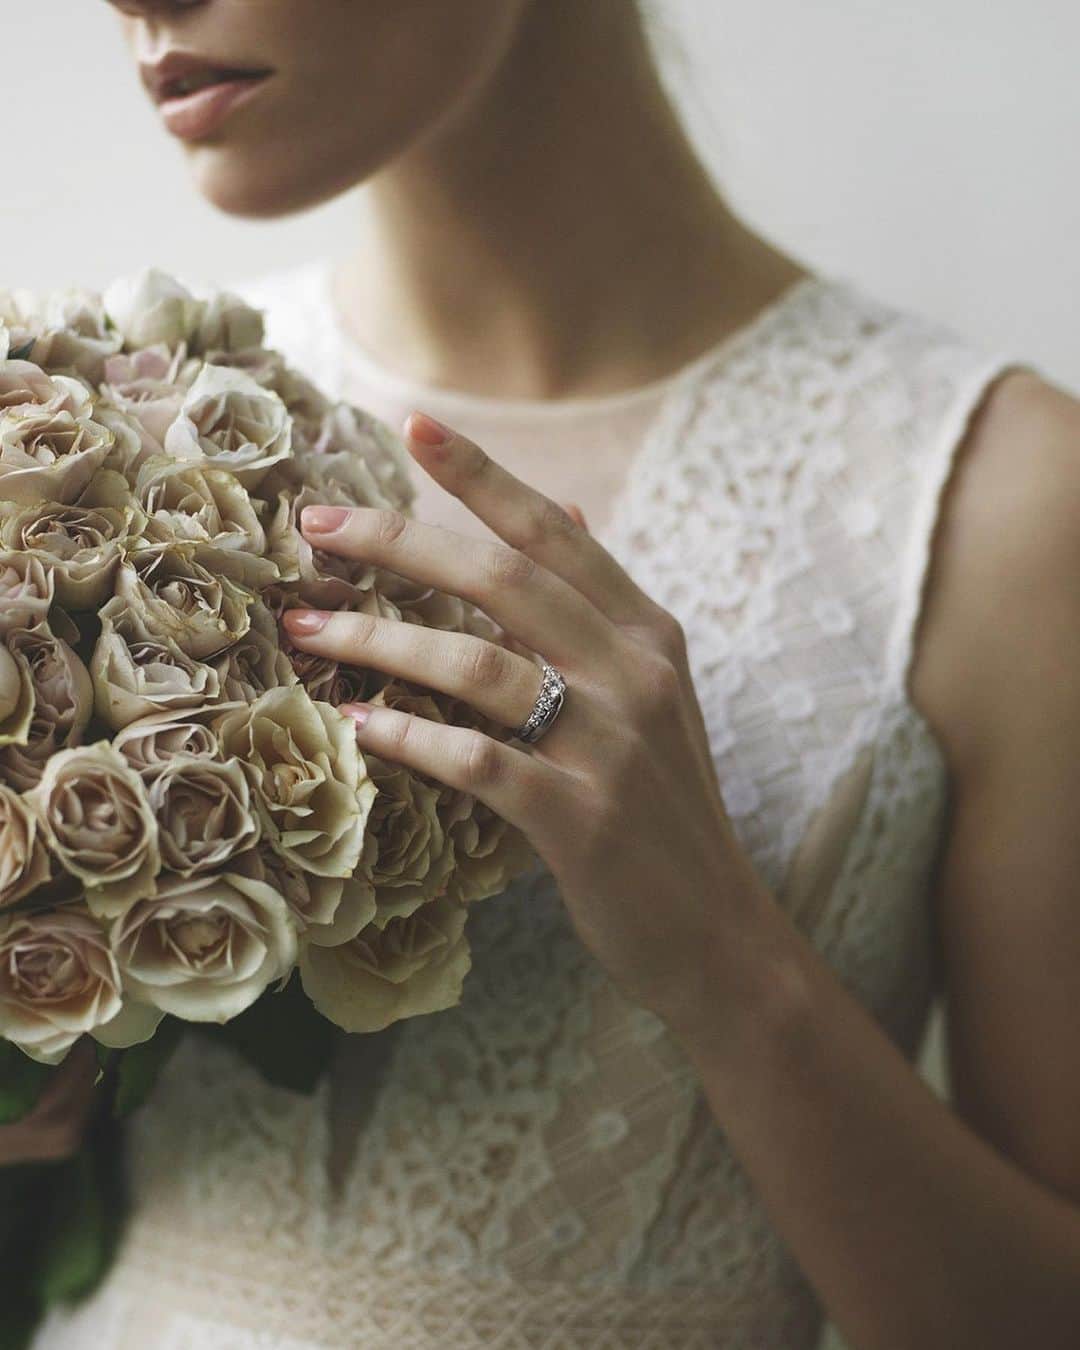 ARCH DAYS Weddingsさんのインスタグラム写真 - (ARCH DAYS WeddingsInstagram)「結婚が決まったら、最初に検討する方の多い #婚約指輪 や #結婚指輪 。これからずっと身につけていくものだから、どこのブランドのものにするかとっても迷いますよね。﻿ ﻿ ﻿ 今回のARCH DAYS LOVES第5弾では、 #ニコライバーグマン 発のジュエリーブランド“NATUR & NICOLAI BERGMANN”をご紹介します💍✨﻿ ﻿ ﻿ ブライダルジュエリーの購入を検討している新郎新婦さんは、ぜひ参考にしてみてくださいね☺️﻿ ﻿ ﻿ ﻿ ▽ARCH DAYSトップページはこちらから☑﻿﻿﻿﻿﻿﻿﻿﻿﻿﻿﻿﻿﻿﻿﻿﻿﻿﻿﻿﻿﻿﻿﻿﻿﻿﻿﻿﻿﻿﻿﻿﻿﻿﻿﻿﻿﻿﻿﻿﻿﻿﻿﻿﻿ @archdays_weddings﻿﻿﻿﻿﻿﻿﻿﻿﻿﻿﻿﻿﻿﻿﻿﻿﻿﻿﻿﻿﻿﻿﻿﻿﻿﻿﻿﻿﻿﻿﻿﻿﻿﻿﻿﻿﻿﻿﻿﻿﻿﻿﻿﻿﻿ プロフィールのリンクから👰🏻﻿﻿﻿﻿﻿﻿﻿﻿﻿﻿﻿﻿﻿﻿﻿﻿﻿﻿﻿﻿﻿﻿﻿﻿﻿﻿﻿﻿﻿﻿﻿﻿﻿﻿﻿﻿﻿﻿﻿﻿﻿﻿﻿﻿﻿ ﻿﻿﻿﻿﻿﻿﻿﻿﻿﻿﻿﻿﻿﻿﻿﻿﻿﻿﻿﻿﻿﻿﻿﻿﻿﻿﻿﻿﻿﻿﻿﻿﻿﻿﻿ ﻿﻿﻿﻿﻿﻿﻿﻿﻿﻿﻿﻿﻿﻿﻿﻿﻿﻿﻿﻿﻿﻿﻿﻿﻿﻿﻿﻿ ﻿﻿﻿﻿﻿﻿﻿﻿#archdays花嫁 をつけて投稿して頂いた方にサイト掲載のお声がけをさせて頂く場合があります🕊🌿﻿﻿﻿﻿﻿﻿﻿﻿﻿﻿﻿﻿﻿﻿﻿﻿﻿﻿﻿﻿﻿﻿﻿﻿﻿﻿﻿﻿﻿﻿﻿﻿﻿﻿﻿﻿﻿﻿﻿﻿﻿﻿﻿﻿﻿ ﻿﻿﻿﻿ ﻿﻿﻿﻿ ▽バースデー・ベビーシャワーなどの情報を見るなら💁🎉﻿﻿﻿﻿﻿﻿﻿﻿﻿﻿﻿﻿﻿﻿﻿﻿﻿﻿﻿﻿﻿﻿﻿﻿﻿﻿﻿﻿﻿﻿﻿﻿﻿﻿﻿﻿﻿﻿﻿﻿﻿﻿﻿﻿﻿ @archdays﻿﻿﻿﻿﻿﻿﻿﻿﻿﻿﻿﻿﻿﻿﻿﻿﻿﻿﻿﻿﻿﻿﻿﻿﻿﻿﻿﻿﻿﻿﻿﻿﻿﻿﻿﻿﻿﻿﻿﻿﻿﻿﻿﻿﻿ ﻿﻿﻿﻿ ﻿﻿﻿﻿ ﻿﻿﻿ ----------------------﻿﻿﻿﻿﻿﻿ #archdays #archdaysloves #naturandnicolaibergmann #natur_jewelry #nicolaibergmann #engagementring #weddingband #ナチュアアンドニコライバーグマン #婚約指輪選び #婚約指輪迷子 #婚約指輪ブランド #婚約指輪探し #結婚指輪選び #結婚指輪迷子 #結婚指輪デザイン #結婚指輪さがし #結婚指輪ブランド #ウェディング準備 #結婚式準備 #プレ花嫁 #プレ花嫁準備 #卒花嫁 #卒花 #2019夏婚 #2019秋婚 #2019冬婚﻿﻿ ----------------------﻿﻿﻿﻿﻿﻿﻿﻿﻿﻿﻿﻿﻿﻿﻿﻿﻿﻿ ﻿https://archdays.com/column/2019/06/13/45306﻿ ----------------------﻿﻿﻿﻿﻿﻿﻿﻿﻿﻿﻿﻿﻿﻿」6月17日 20時11分 - archdays_weddings